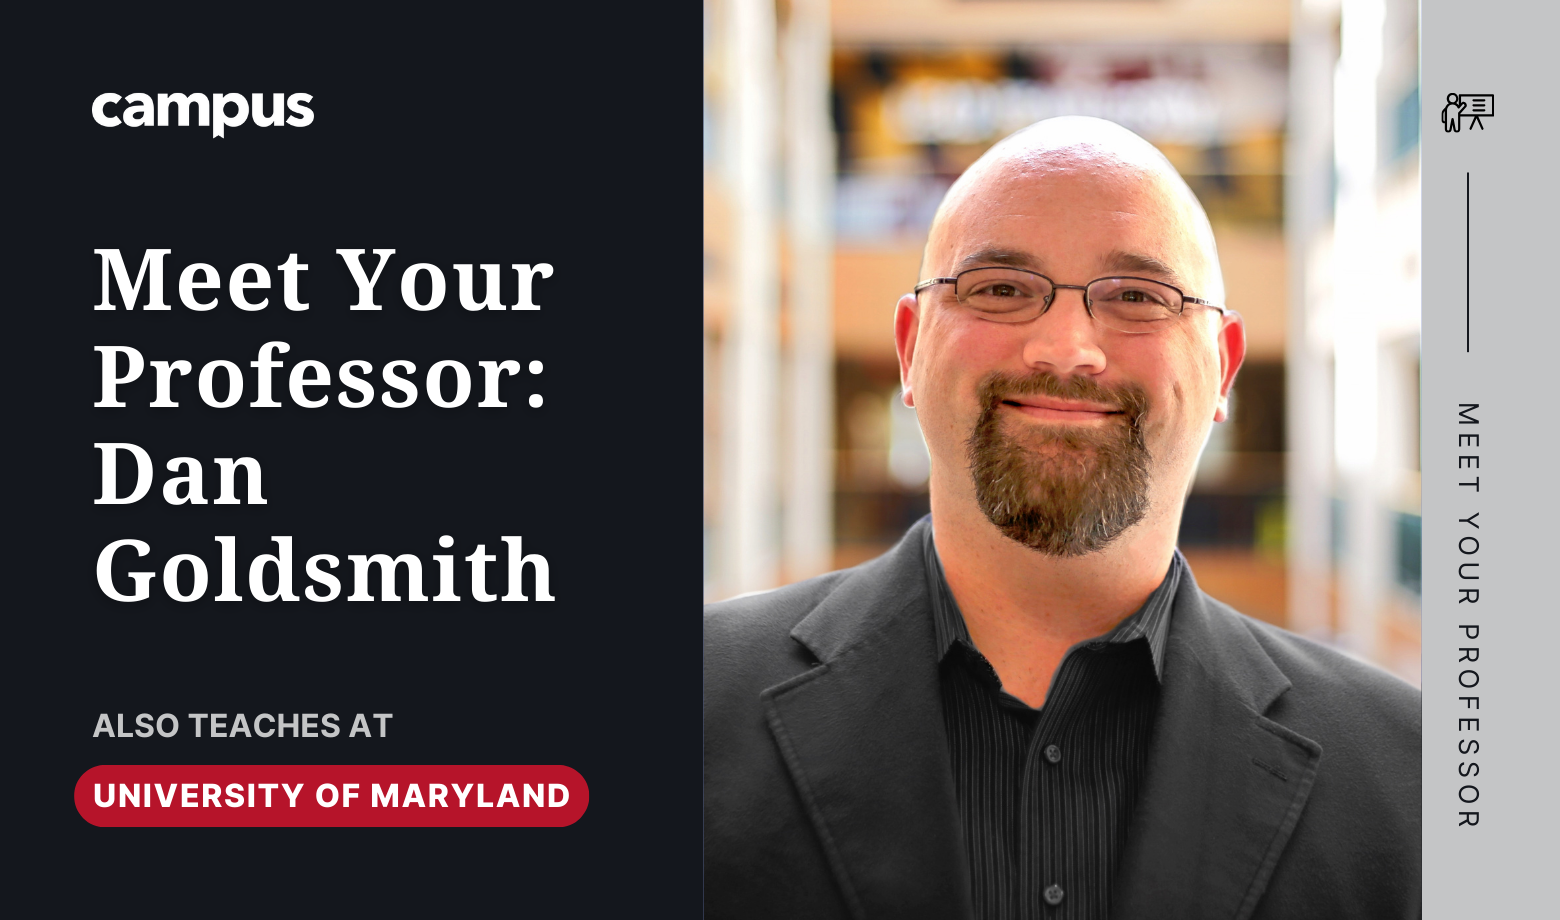 Meet Your Professor: Dan Goldsmith